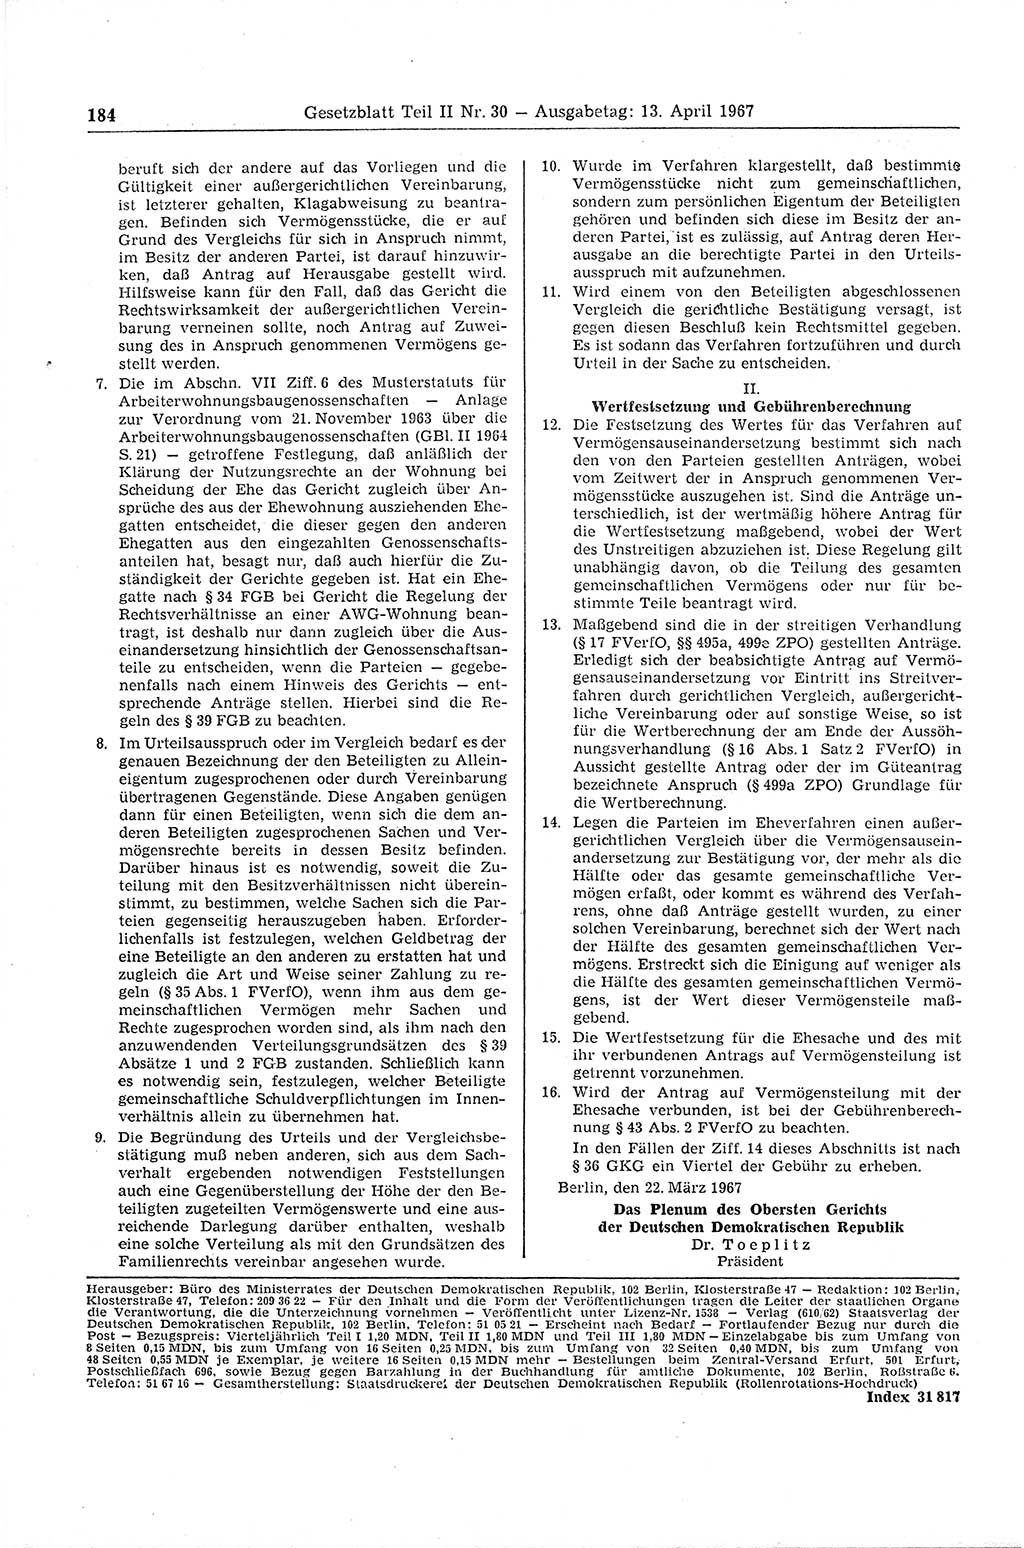 Gesetzblatt (GBl.) der Deutschen Demokratischen Republik (DDR) Teil ⅠⅠ 1967, Seite 184 (GBl. DDR ⅠⅠ 1967, S. 184)